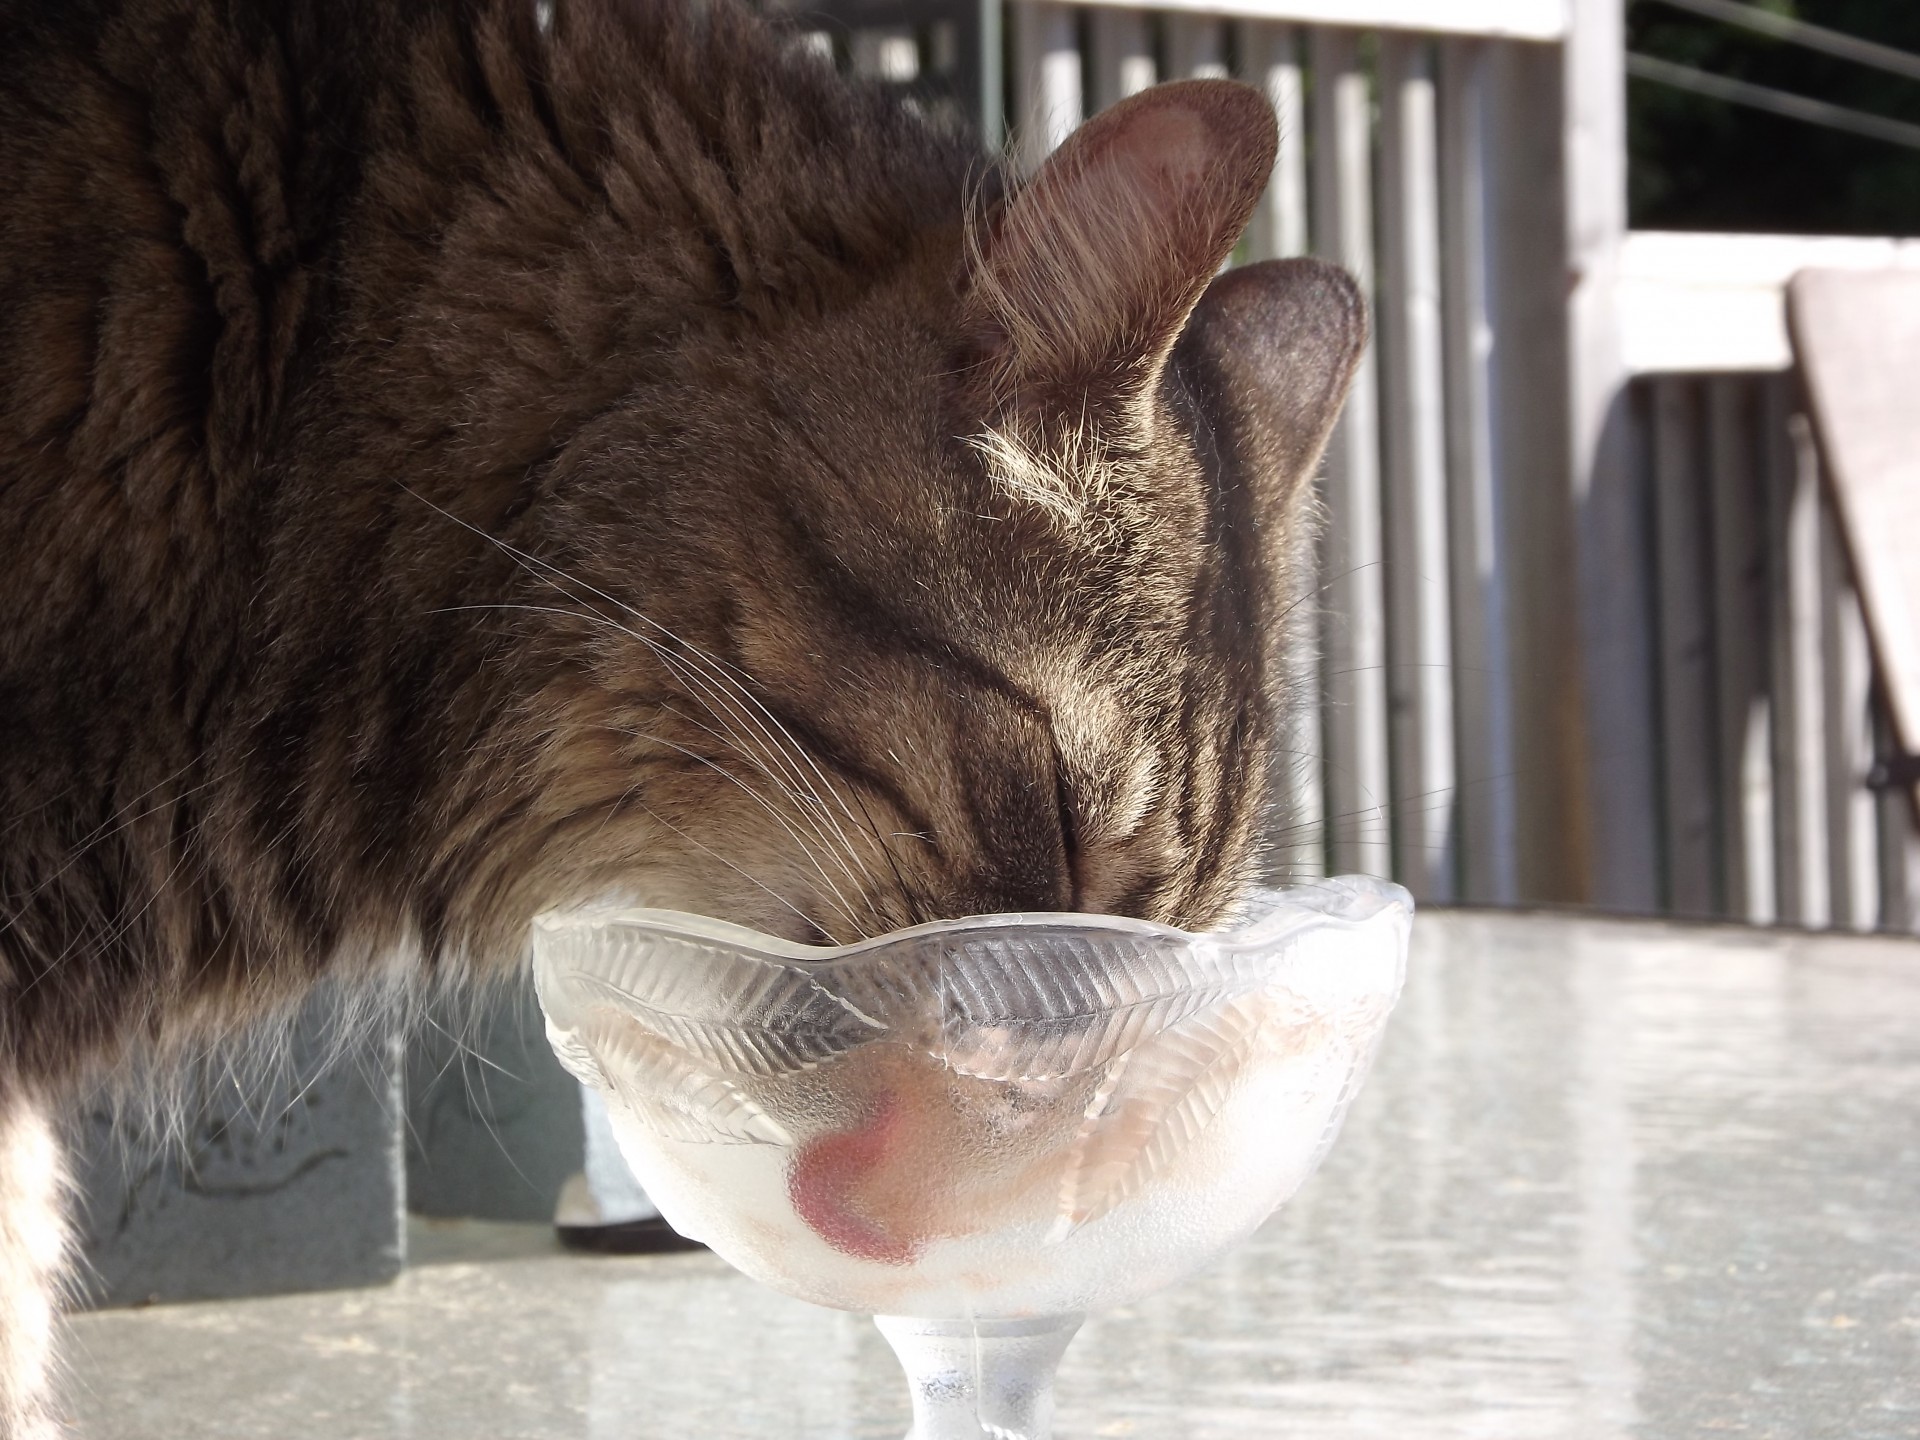 cat licking bowl free photo